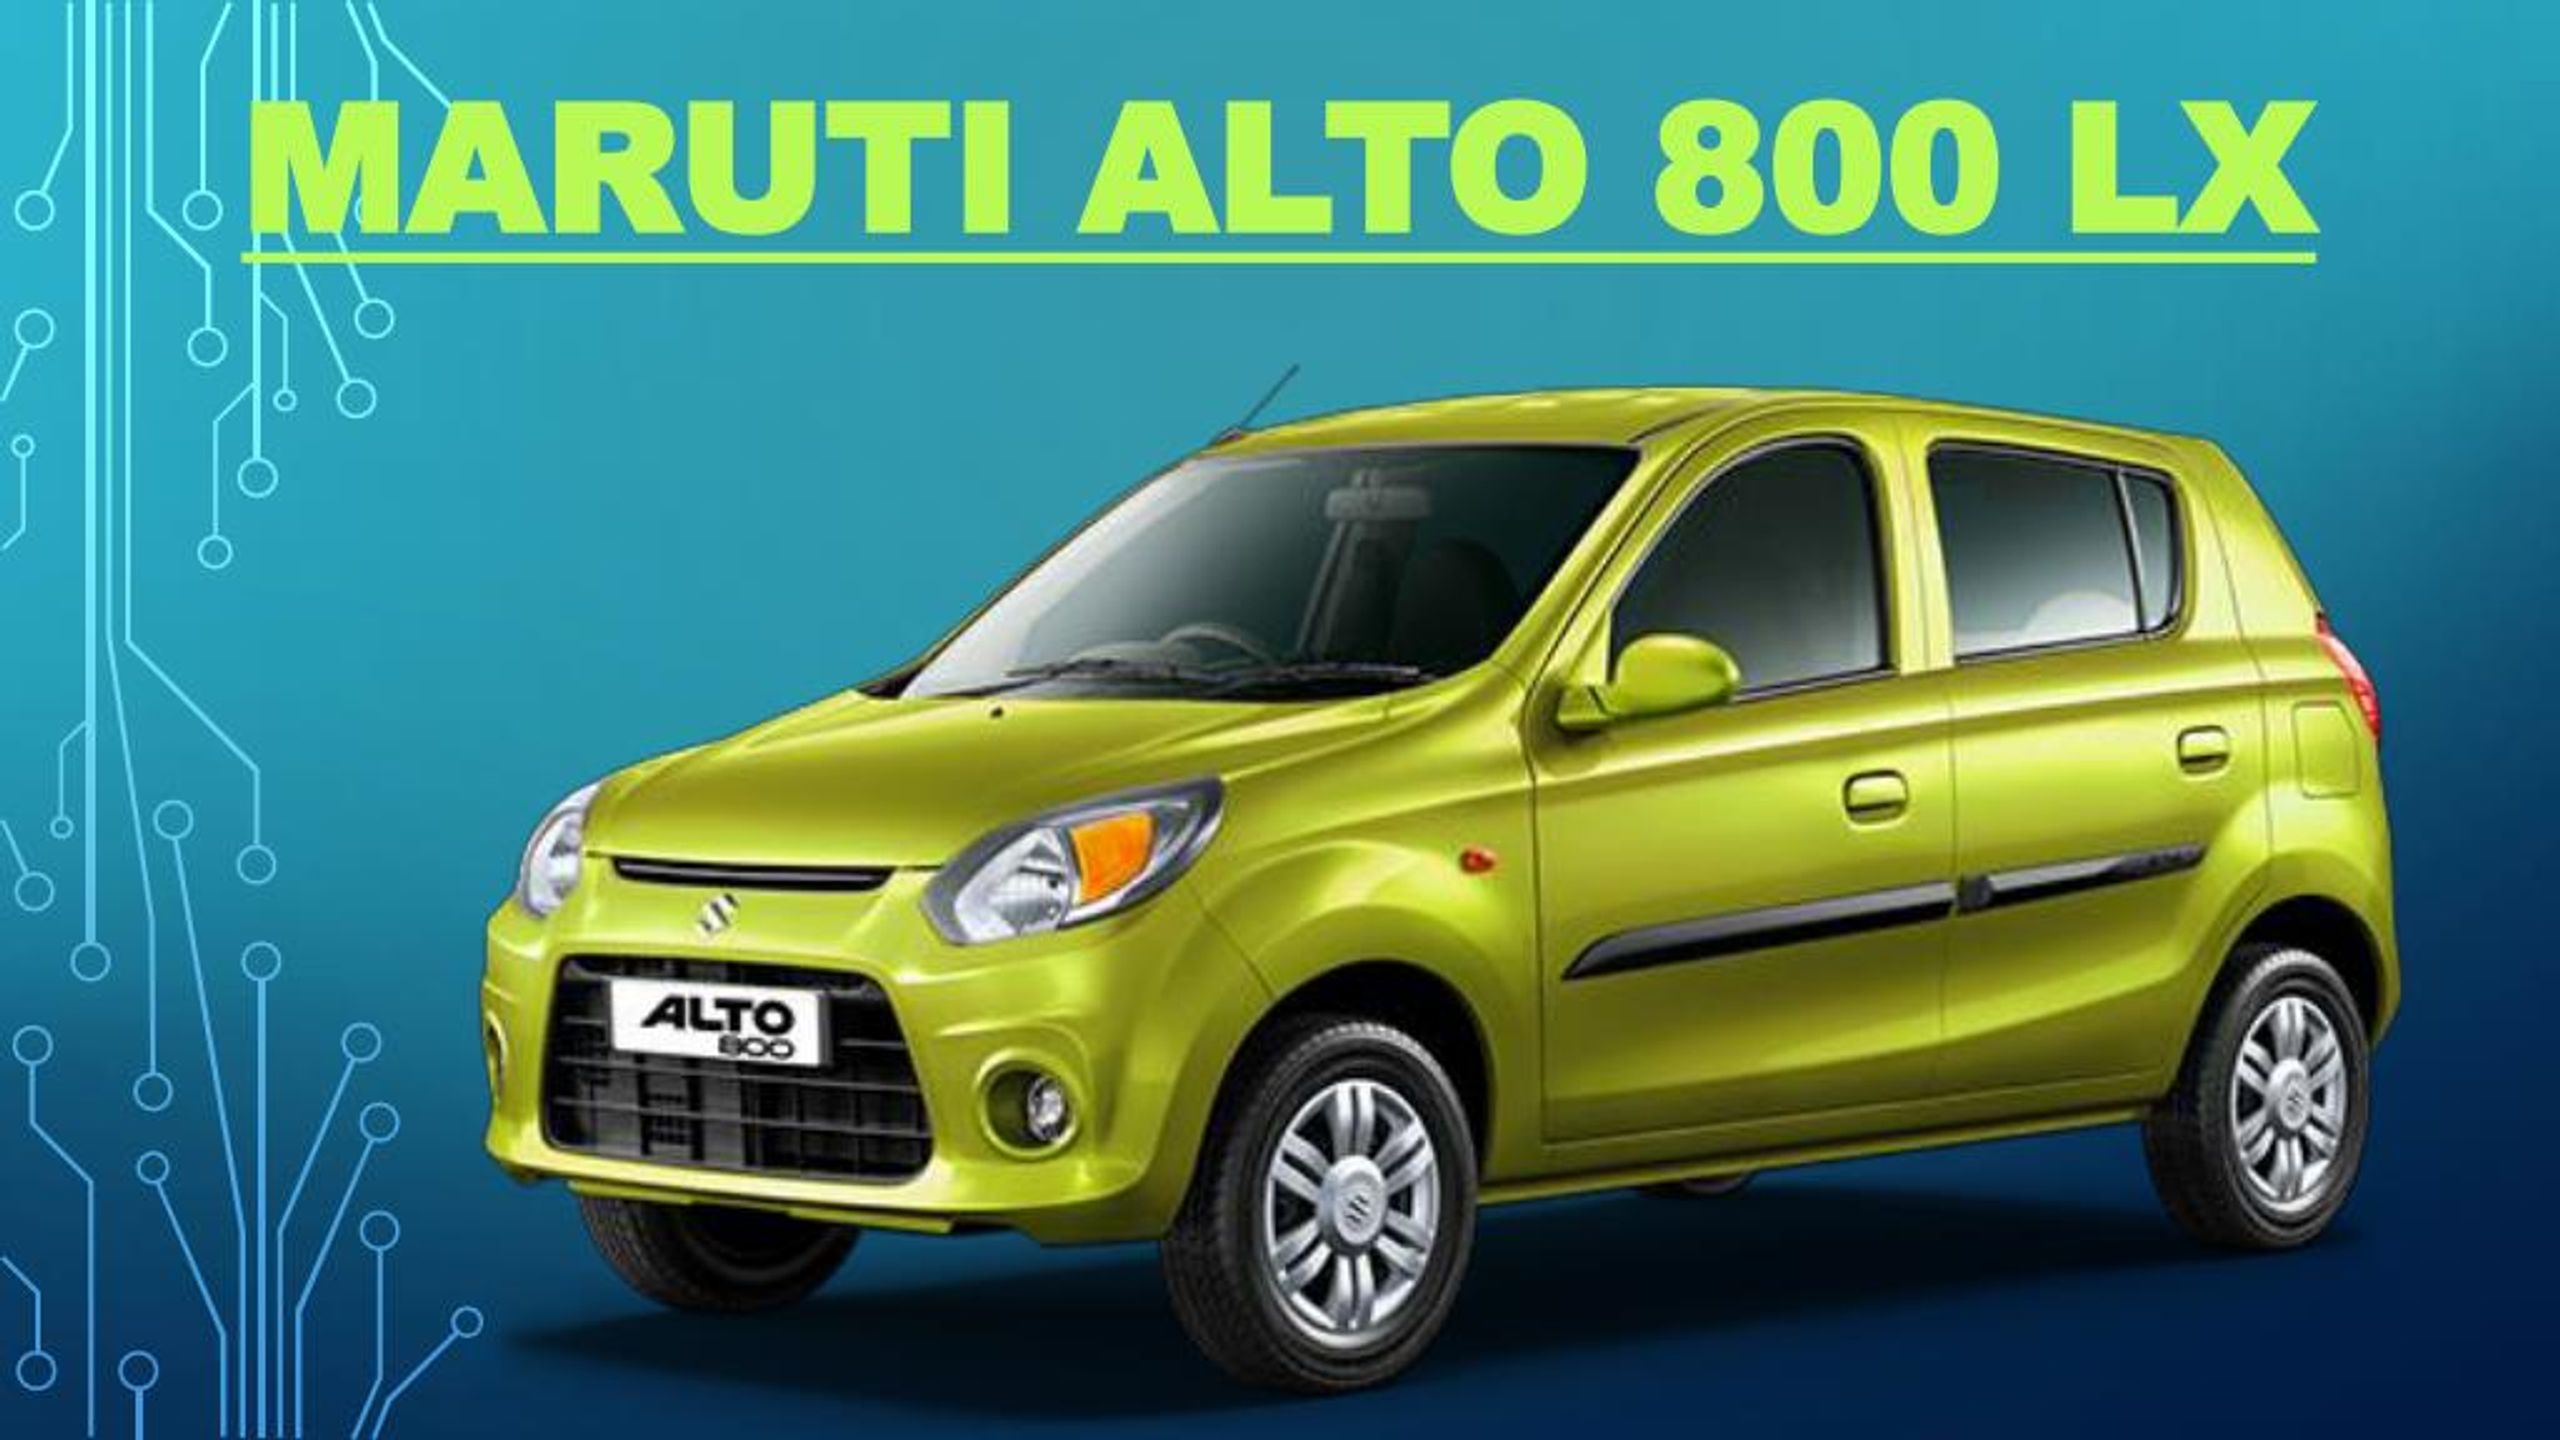 Maruti Alto K10 Price in Mumbai, Pune & Navi Mumbai - Autovista